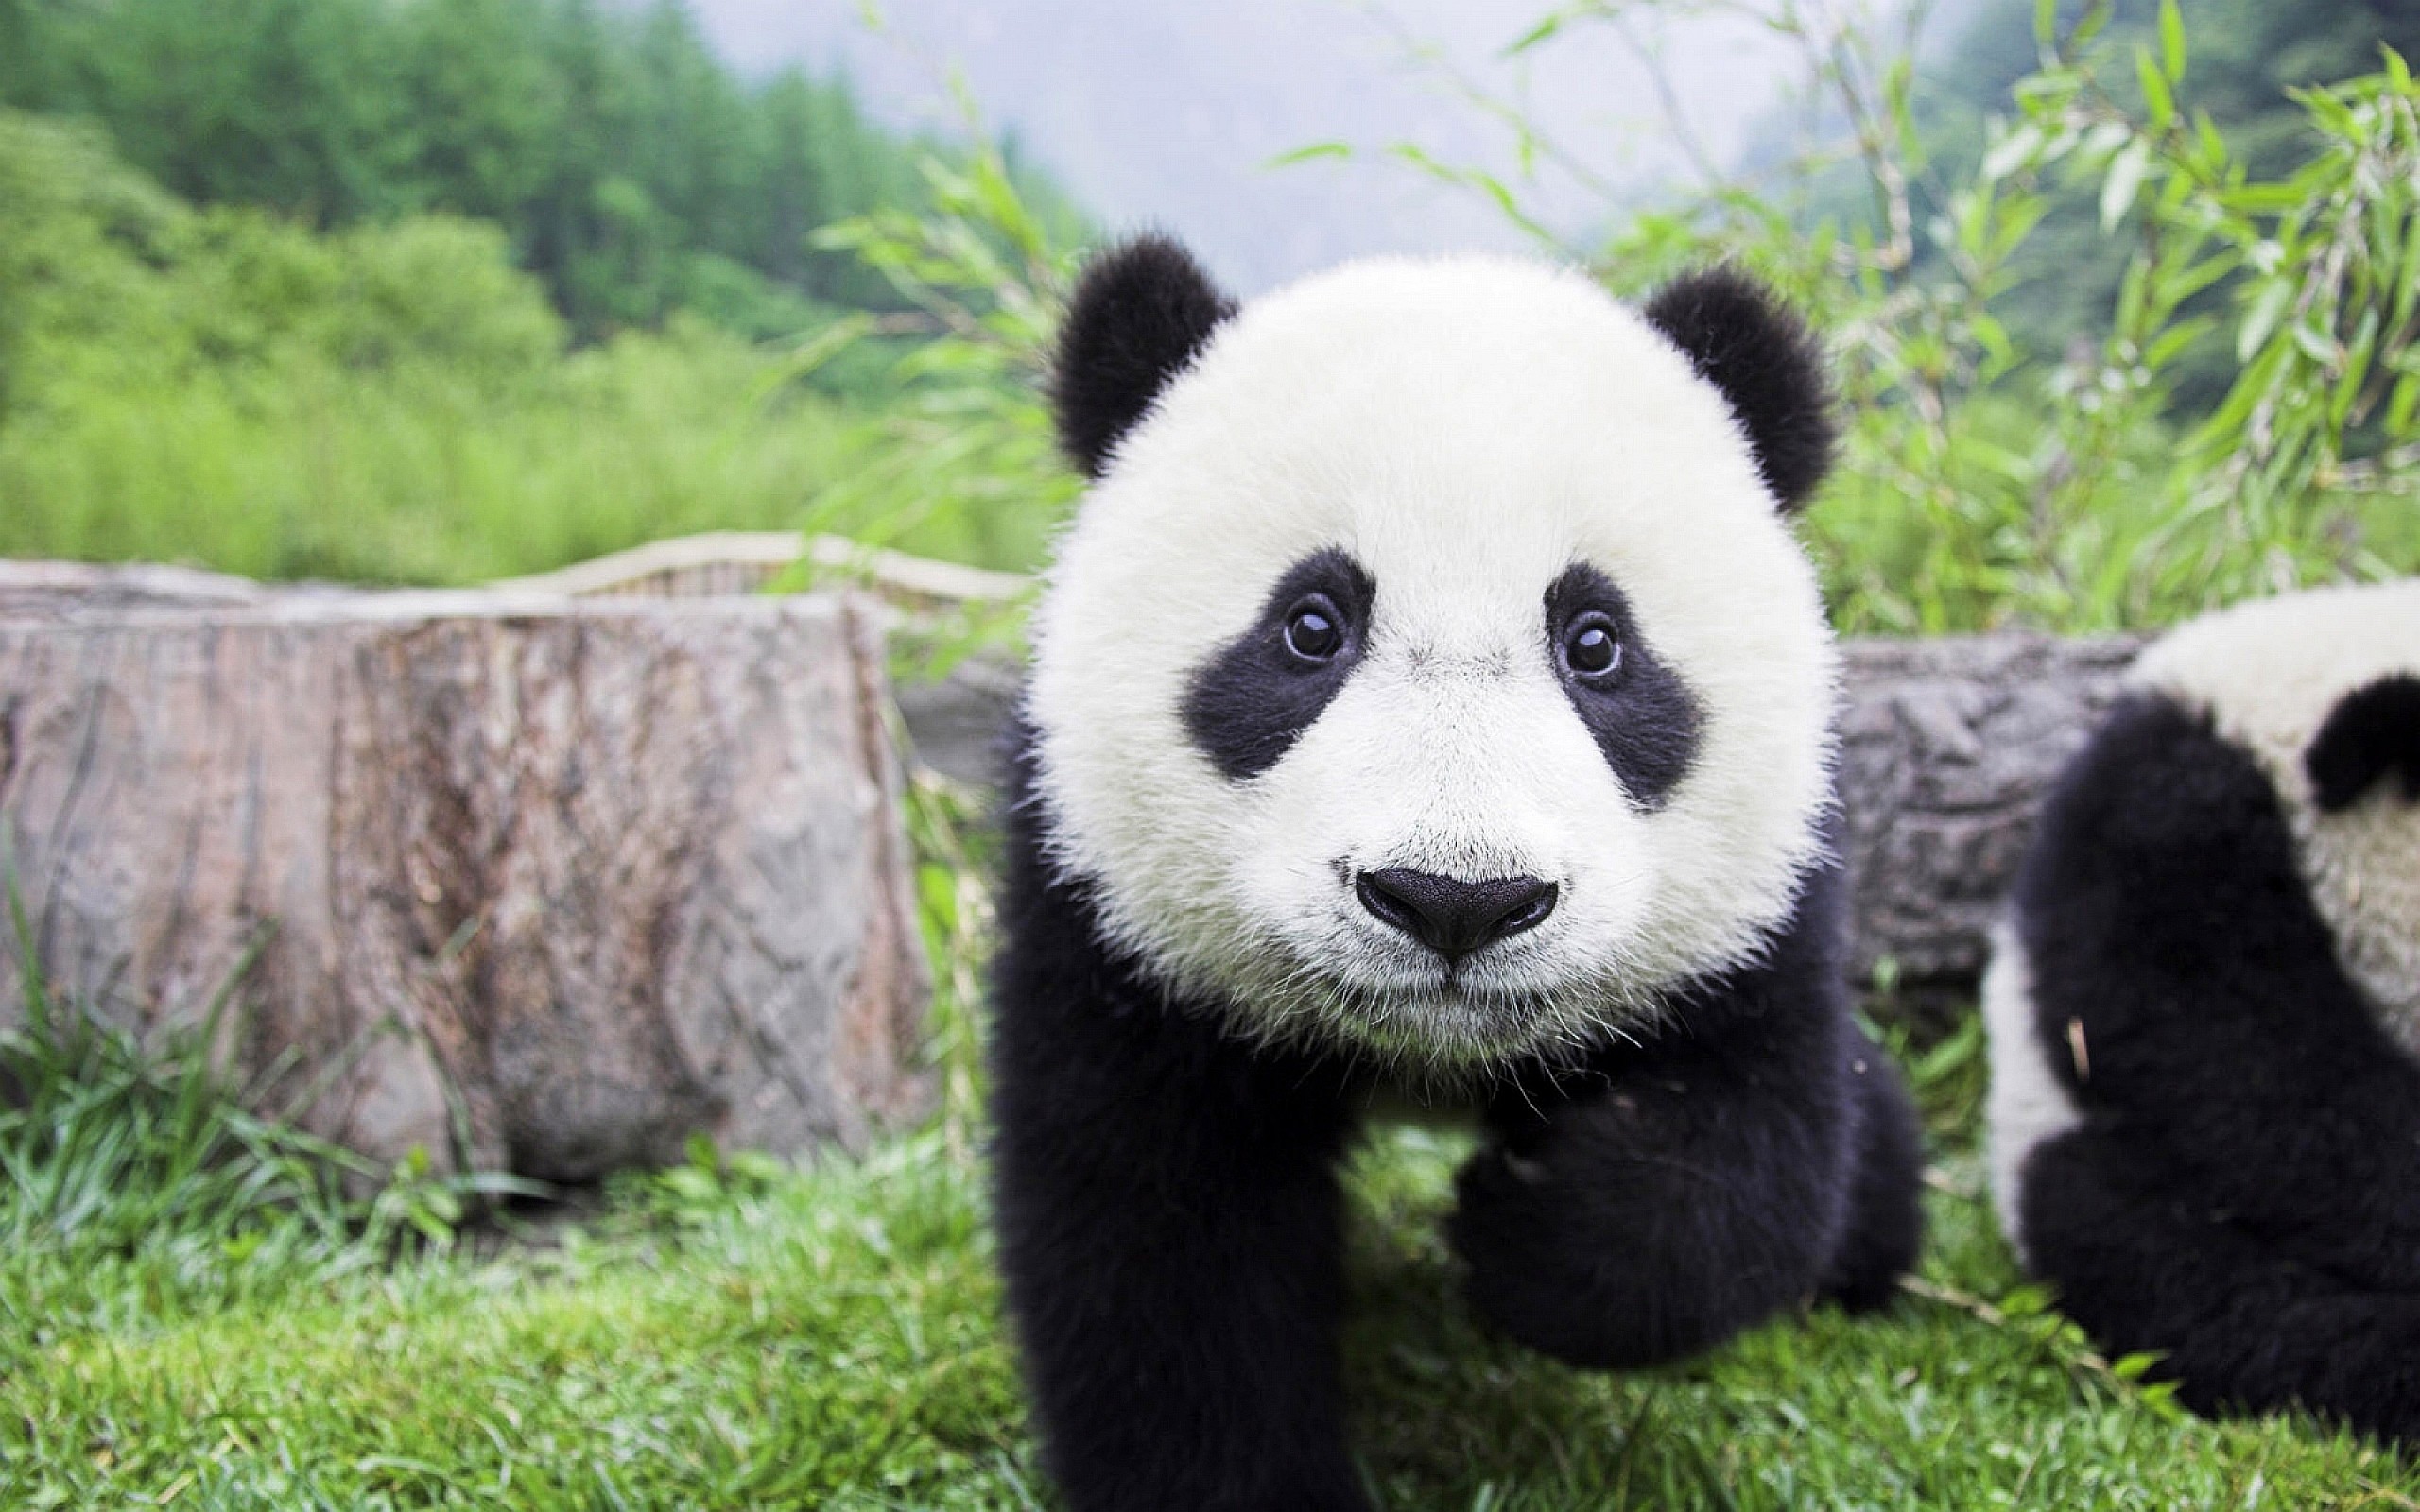 General 2560x1600 panda animals bears mammals closeup